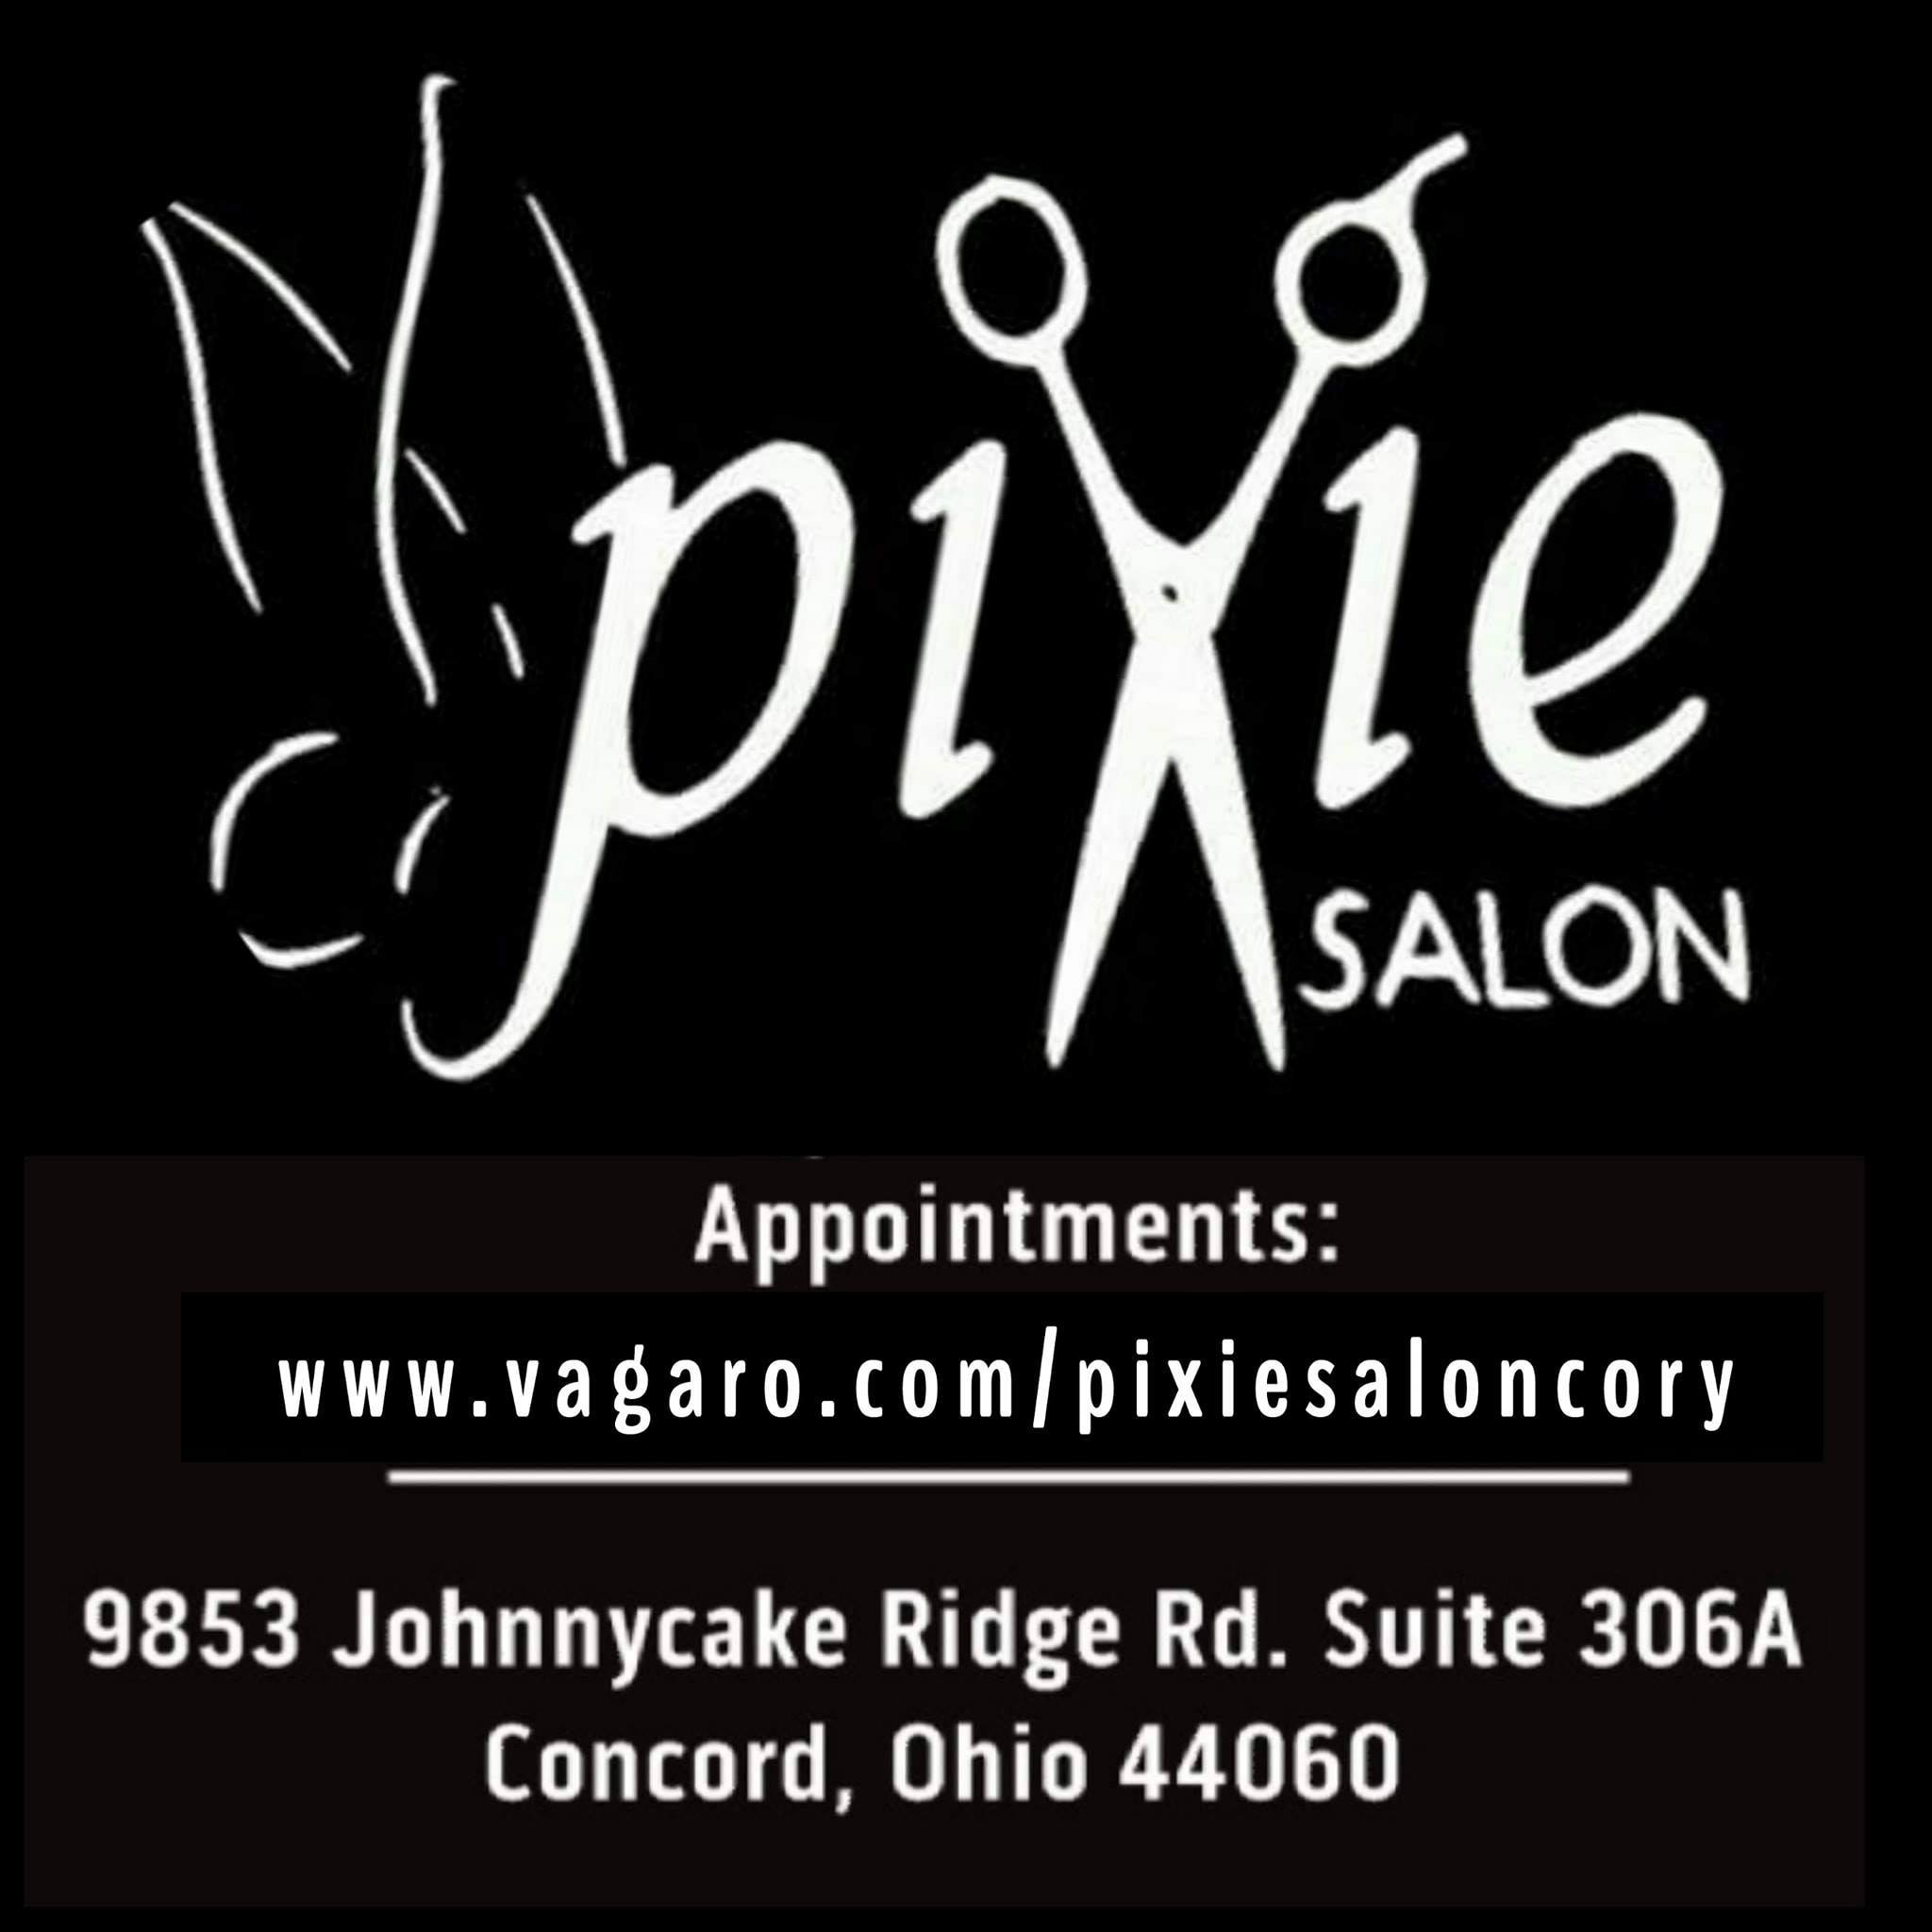 PIXIE SALON LLC 9853 Johnnycake Ridge Rd #306a, Mentor-On-The-Lake Ohio 44060